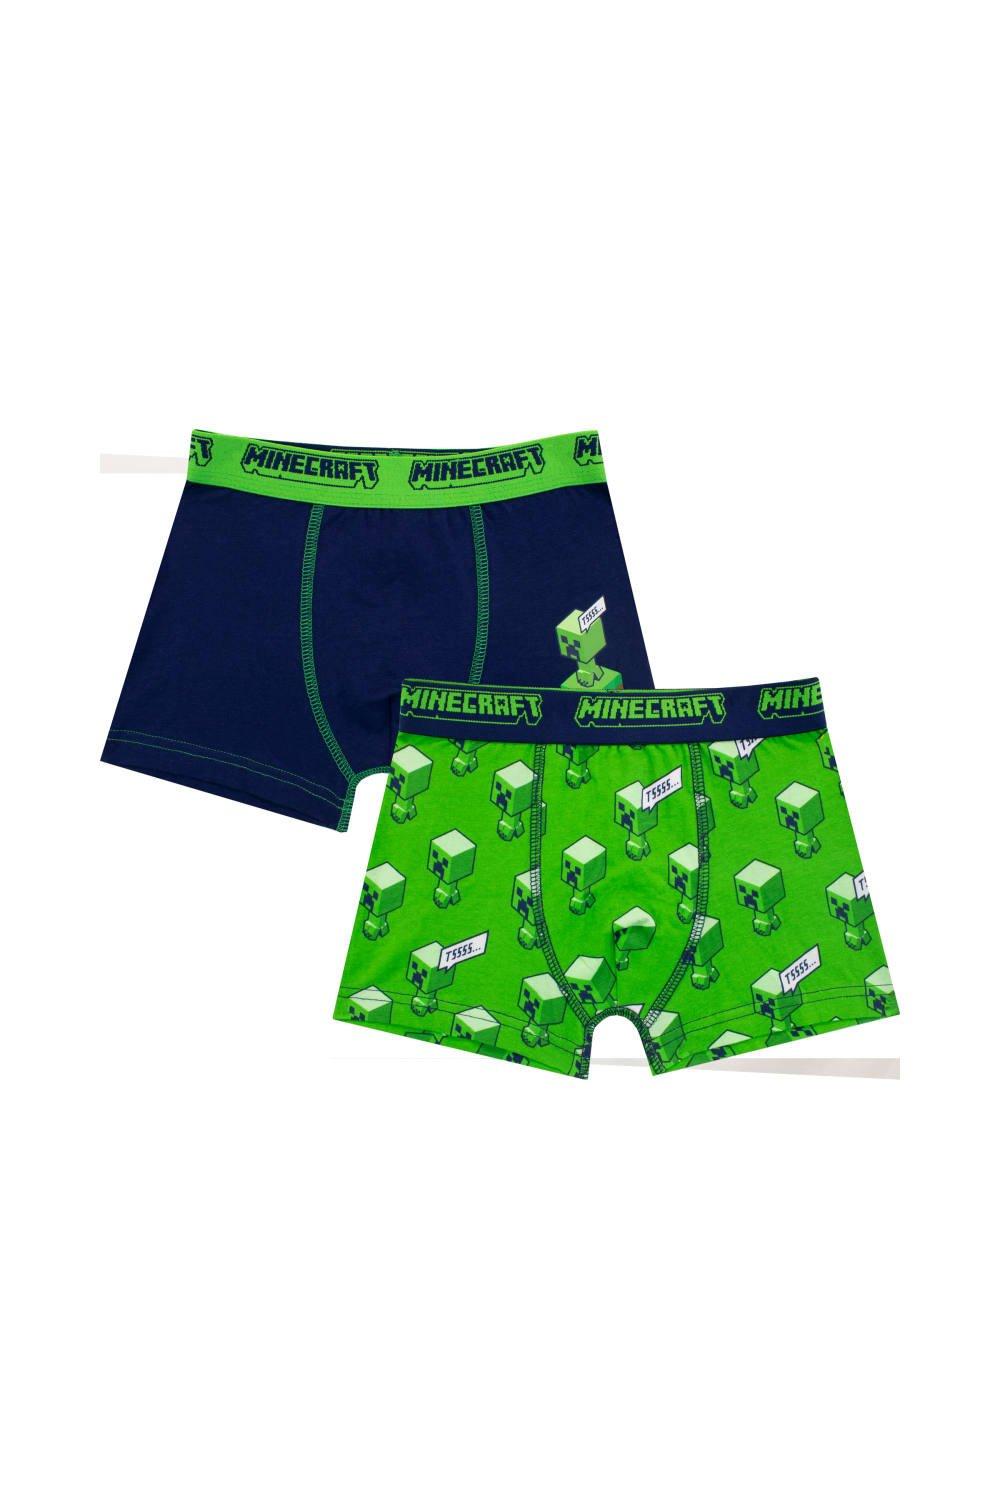 Minecraft Boys Underwear Pack of 2 5-6 Years Green 